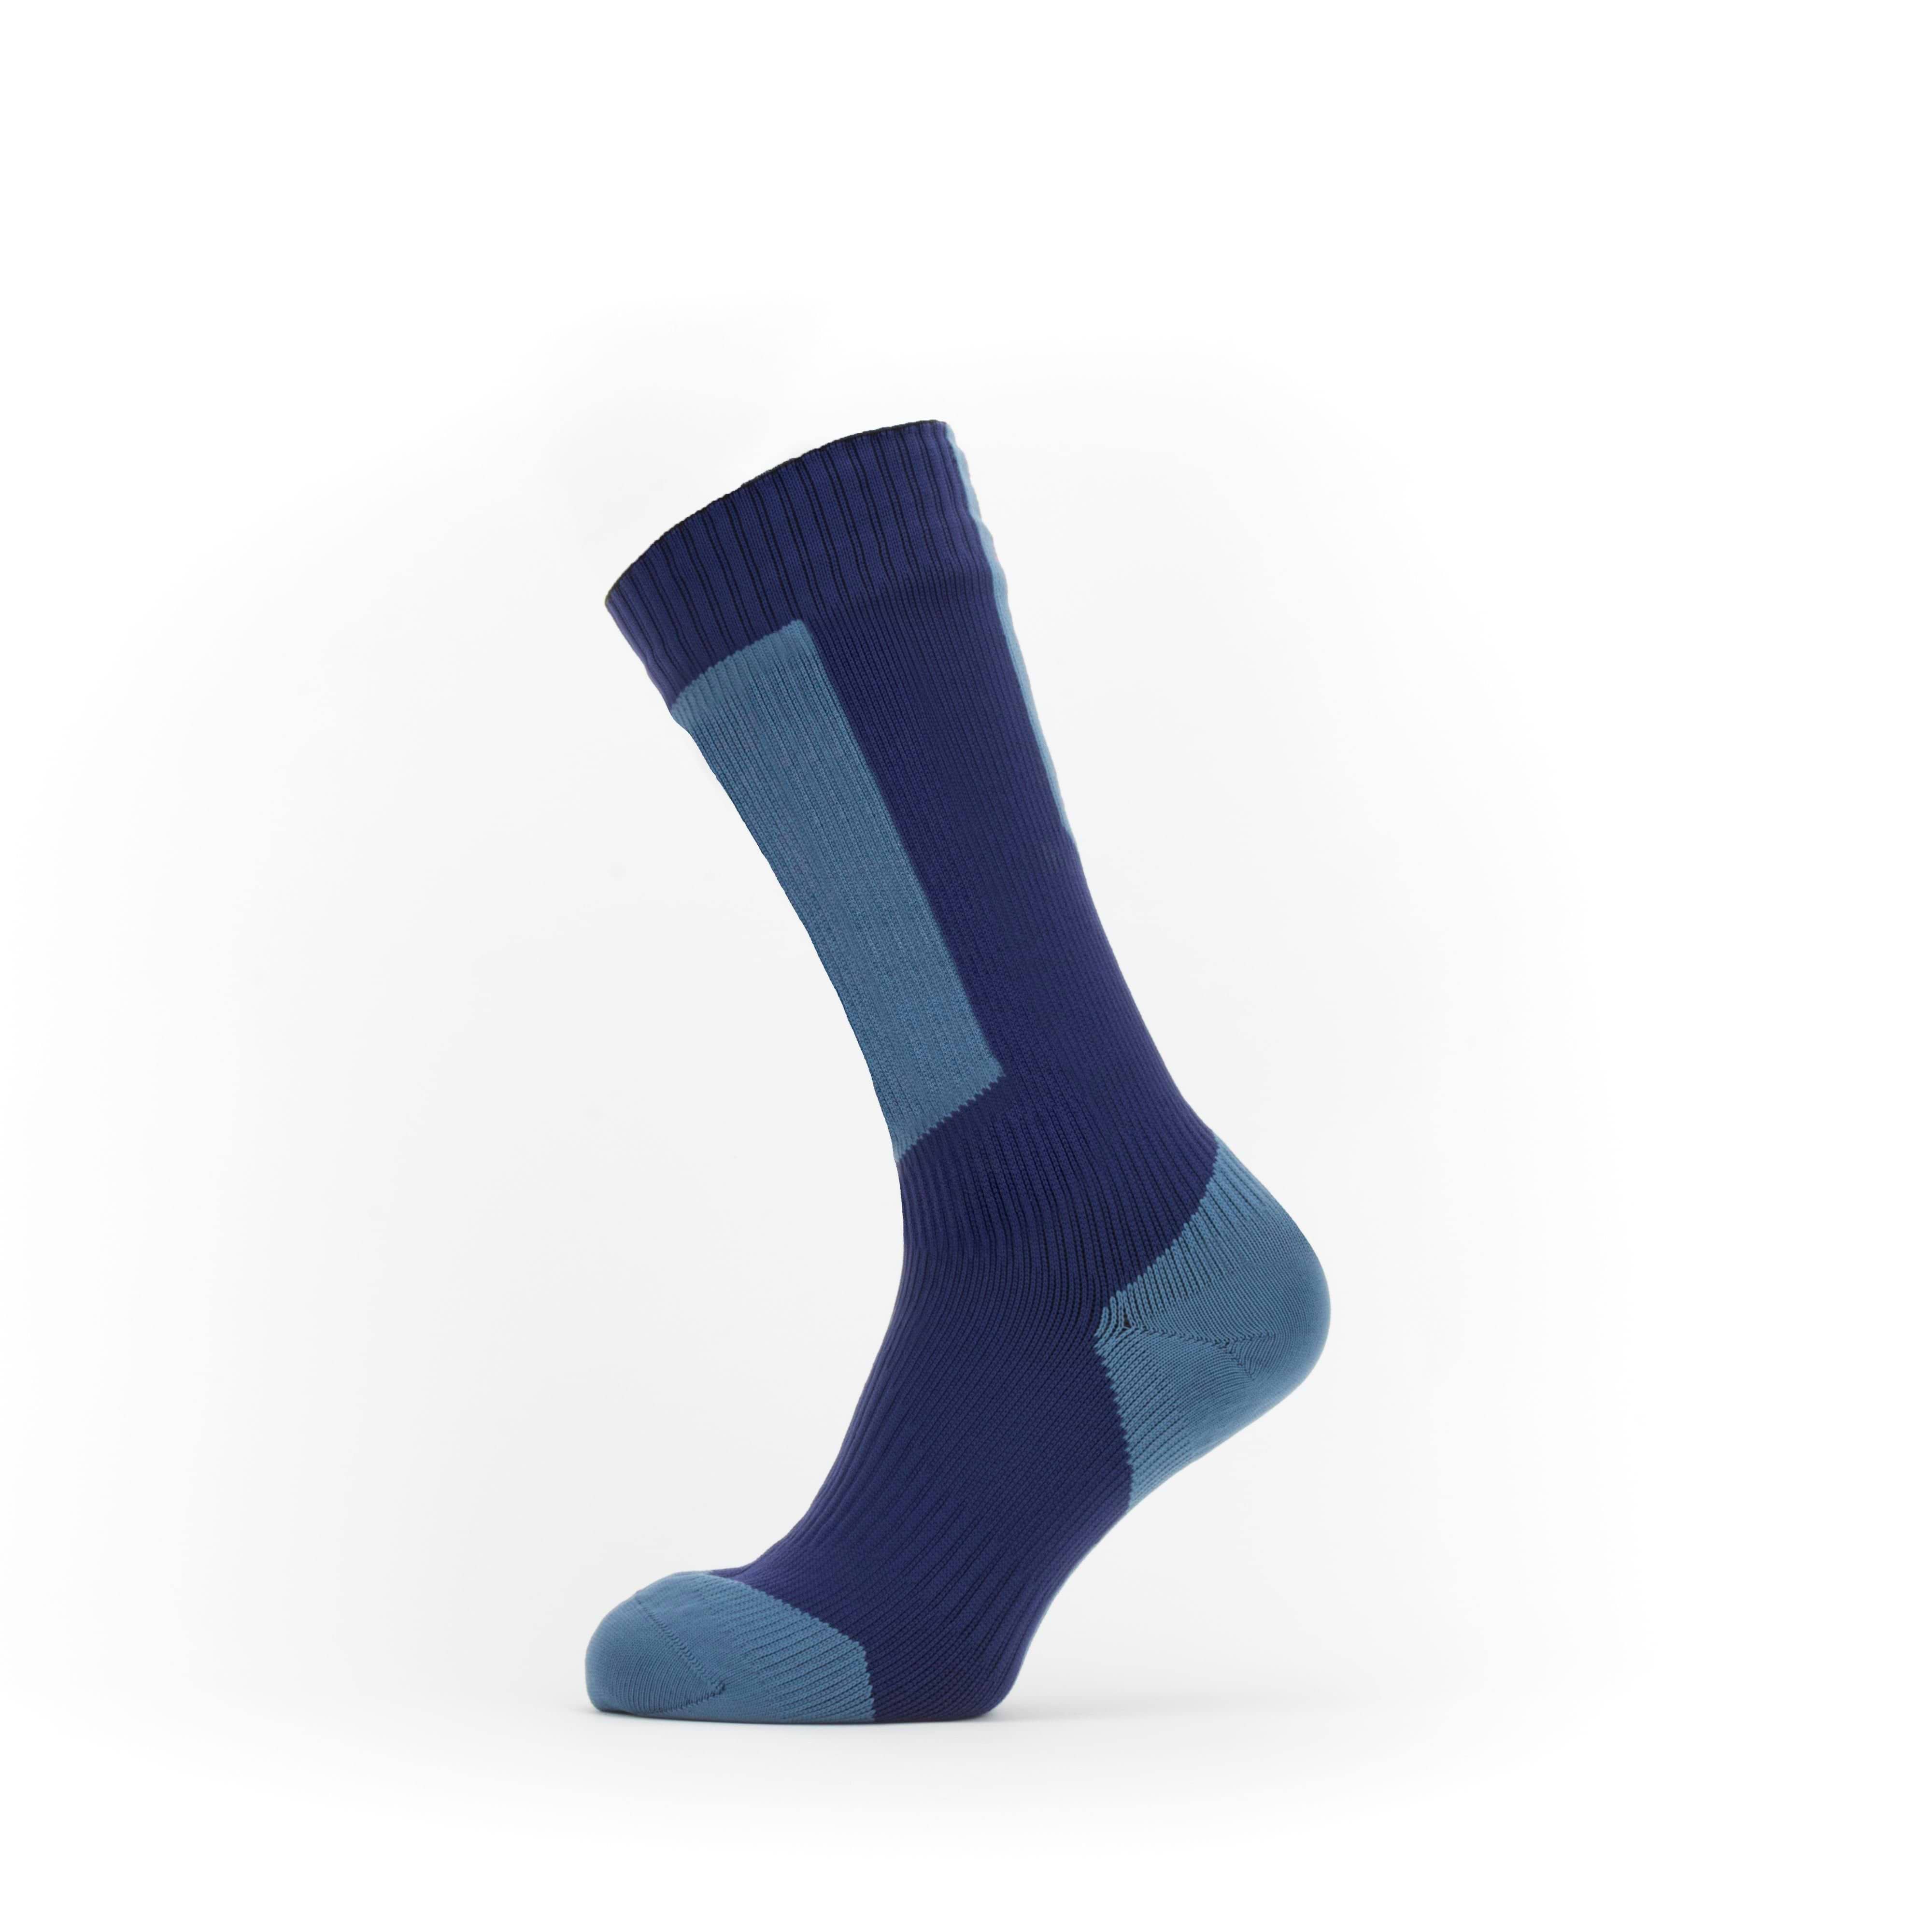 100% Waterproof Breathable Socks – Upbodee